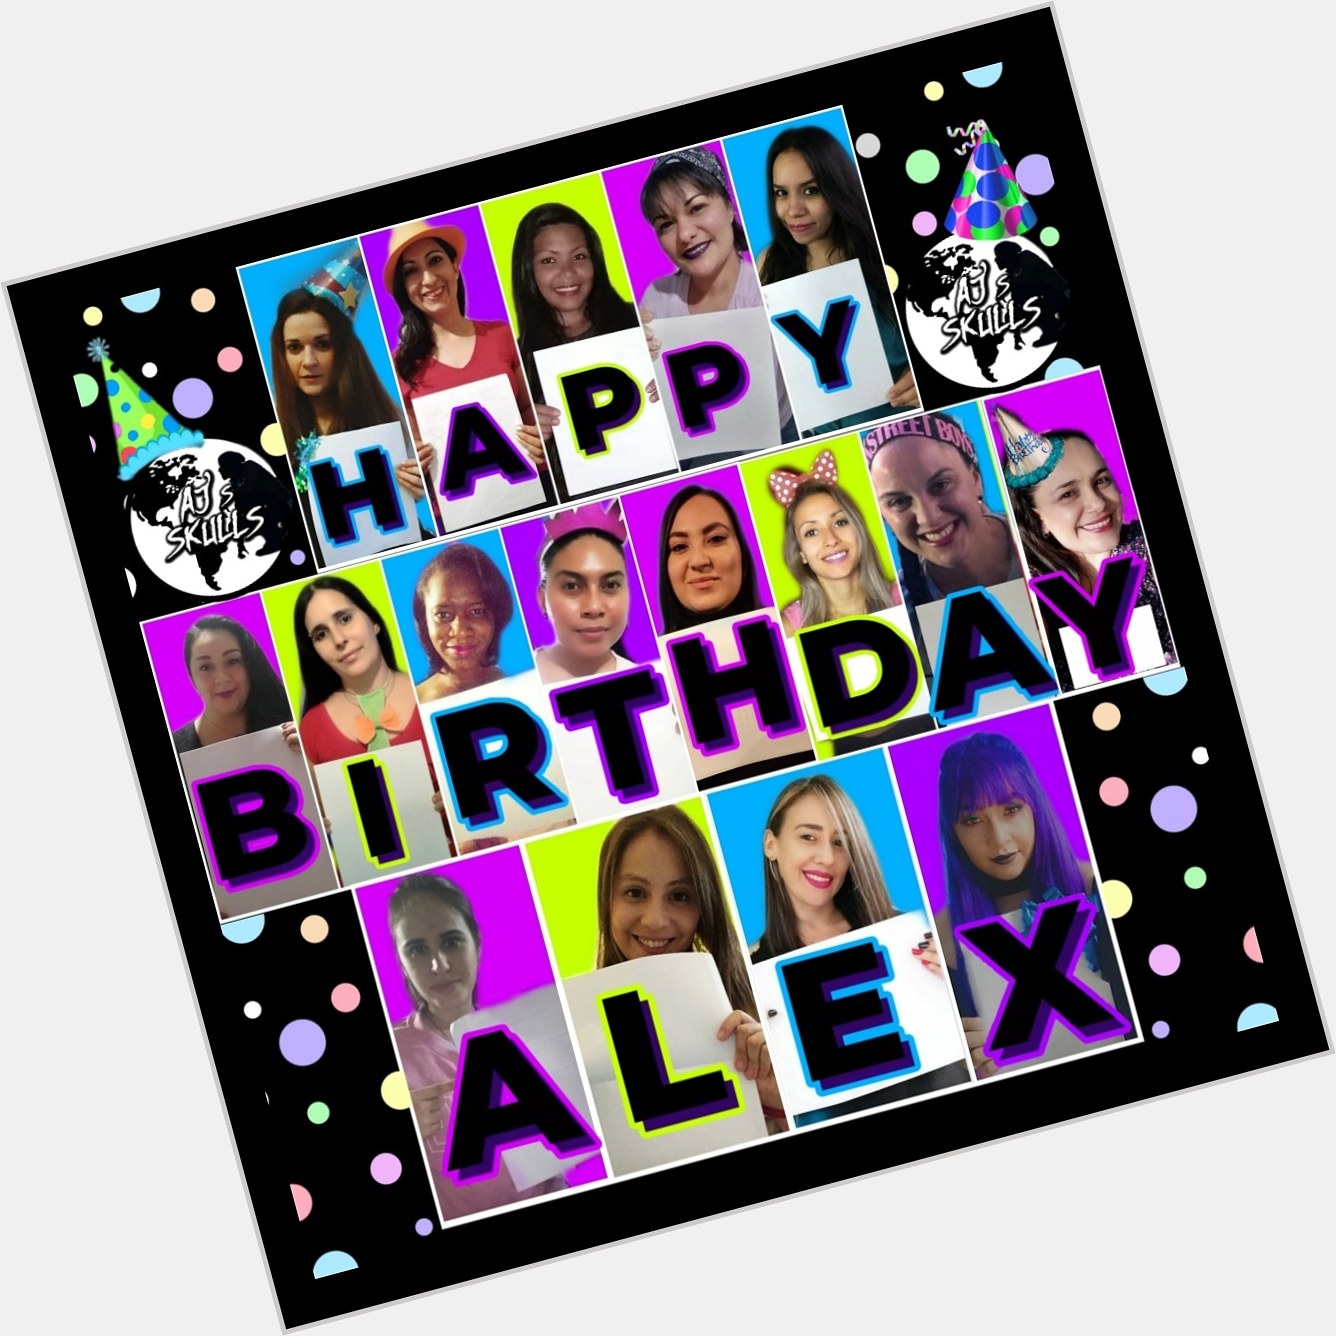     Happy Birthday Alex  